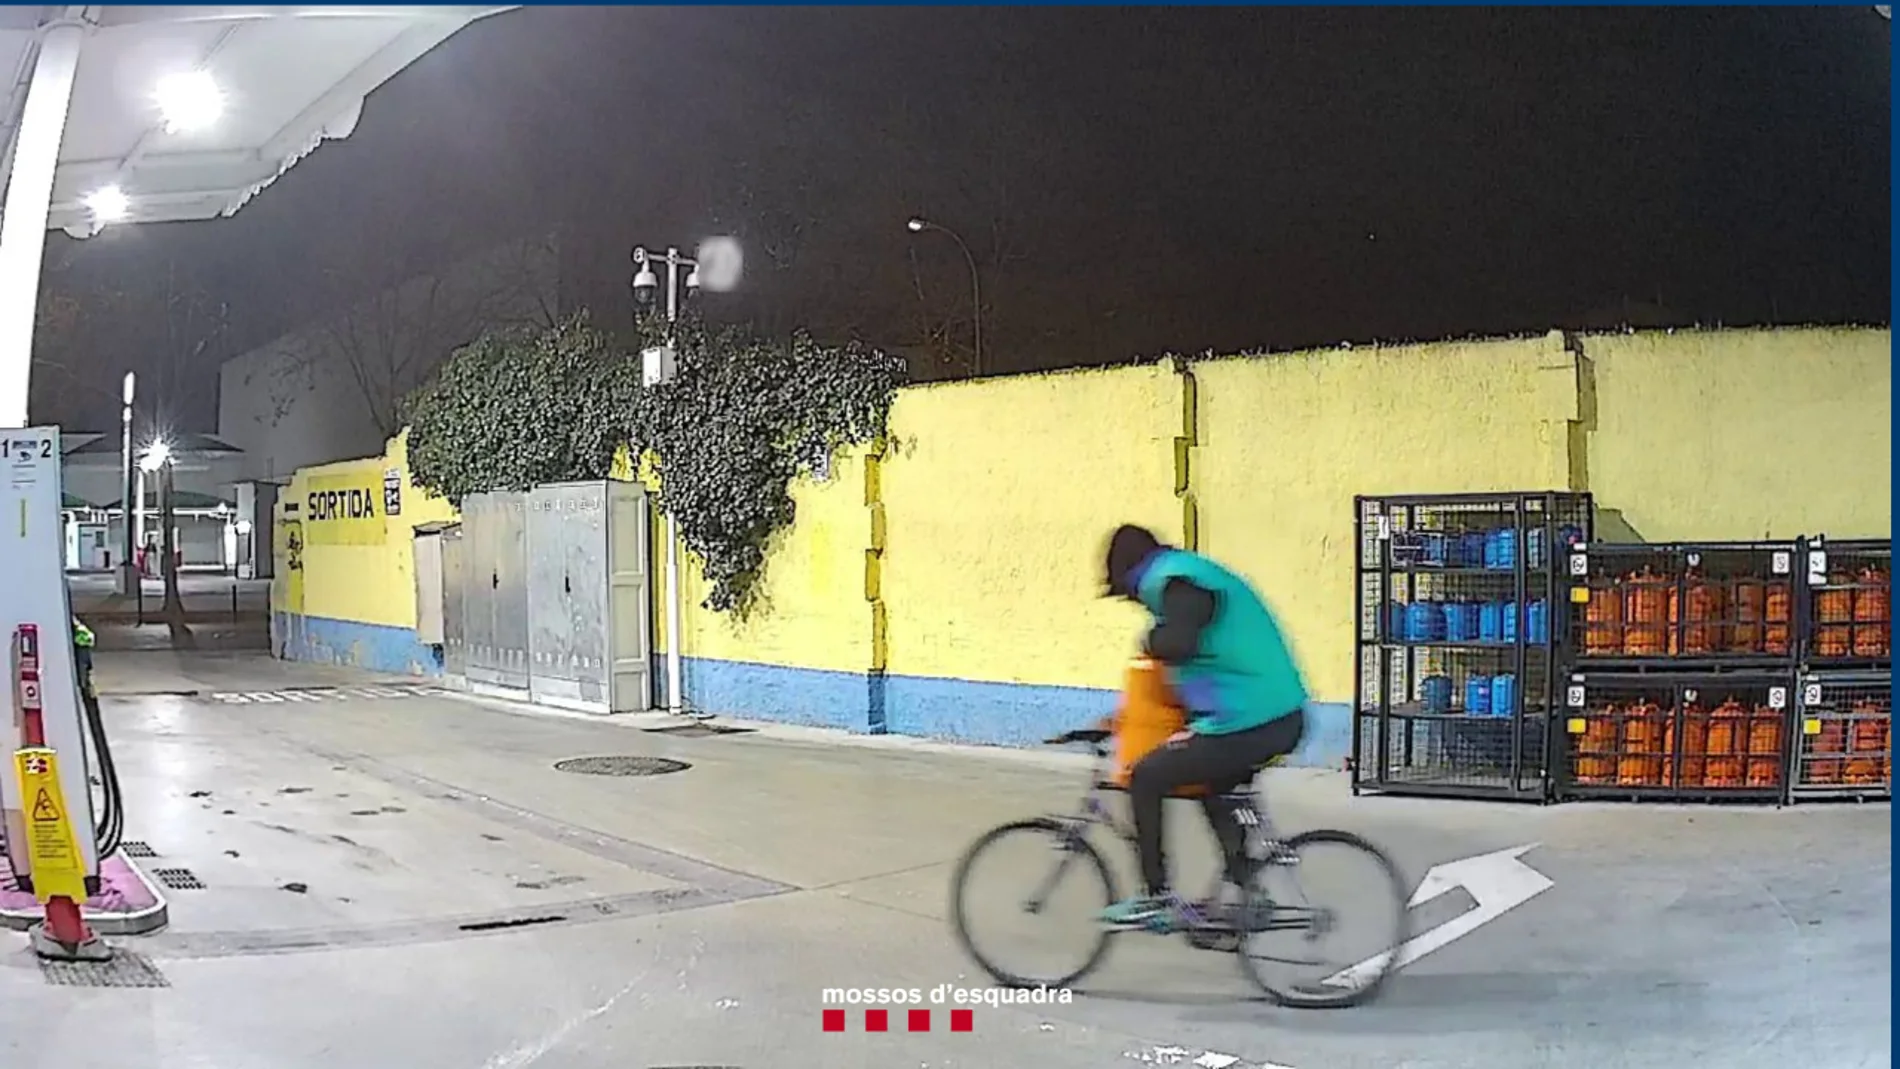 El ladrón con una de las bombonas de butano en la bicicleta